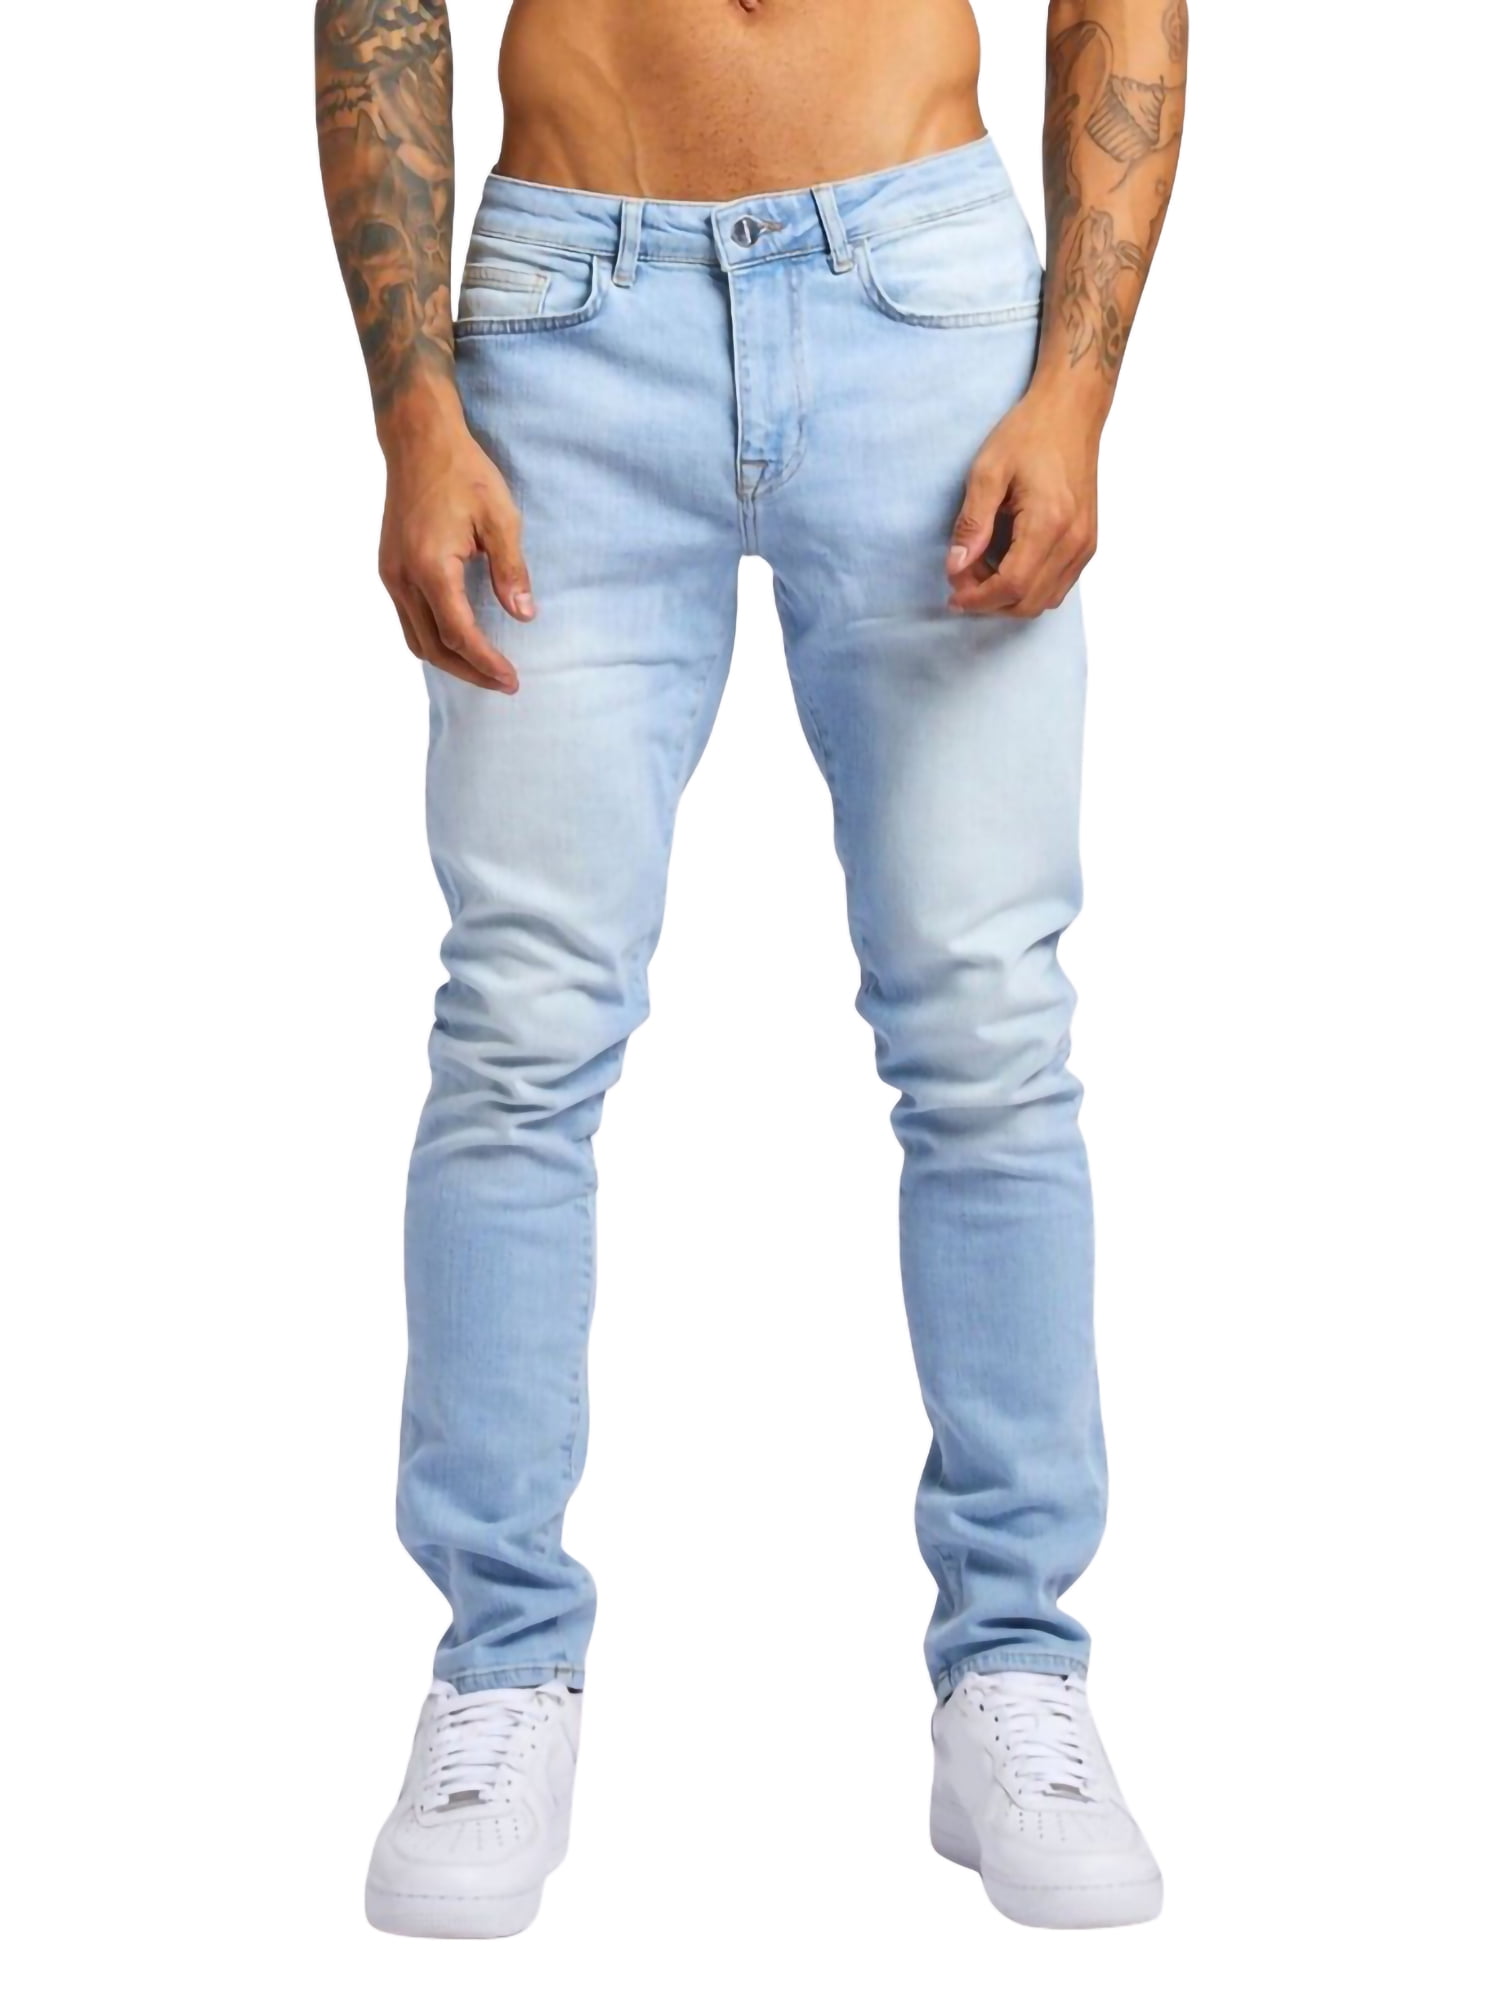 LONGBIDA Fashion Ripped Jeans Skinny Solid Color Casual Retro Men